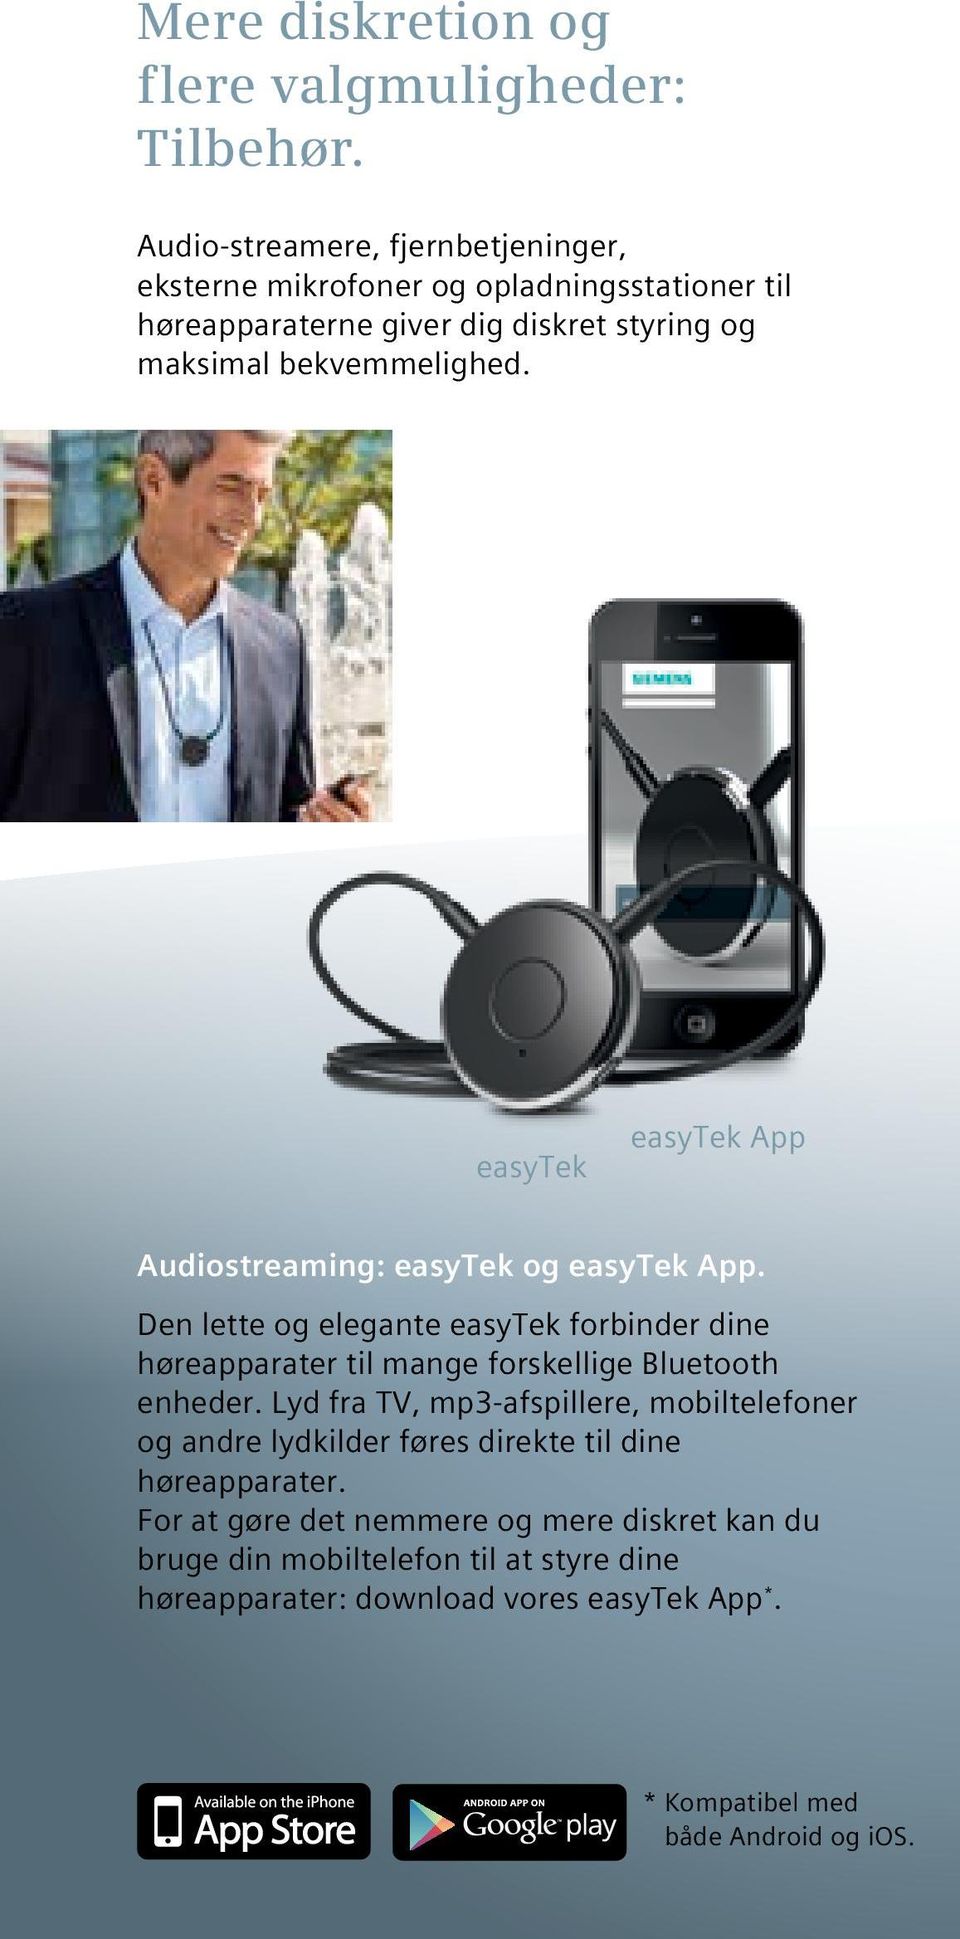 easytek easytek App Audiostreaming: easytek og easytek App. Den lette og elegante easytek forbinder dine høreapparater til mange forskellige Bluetooth enheder.